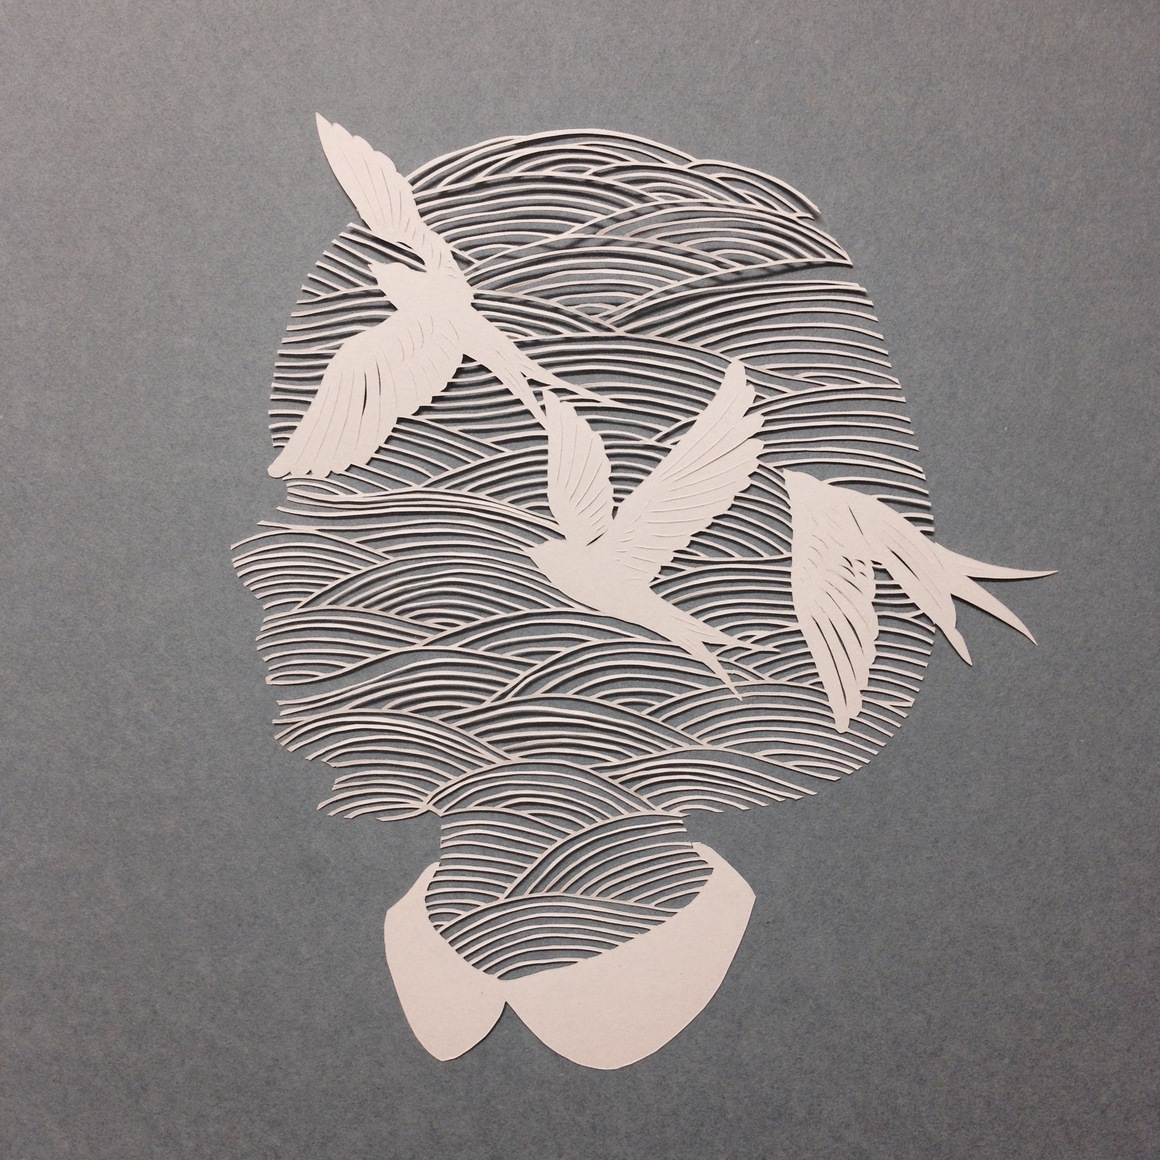 Kanako-Abe-papercuts-01